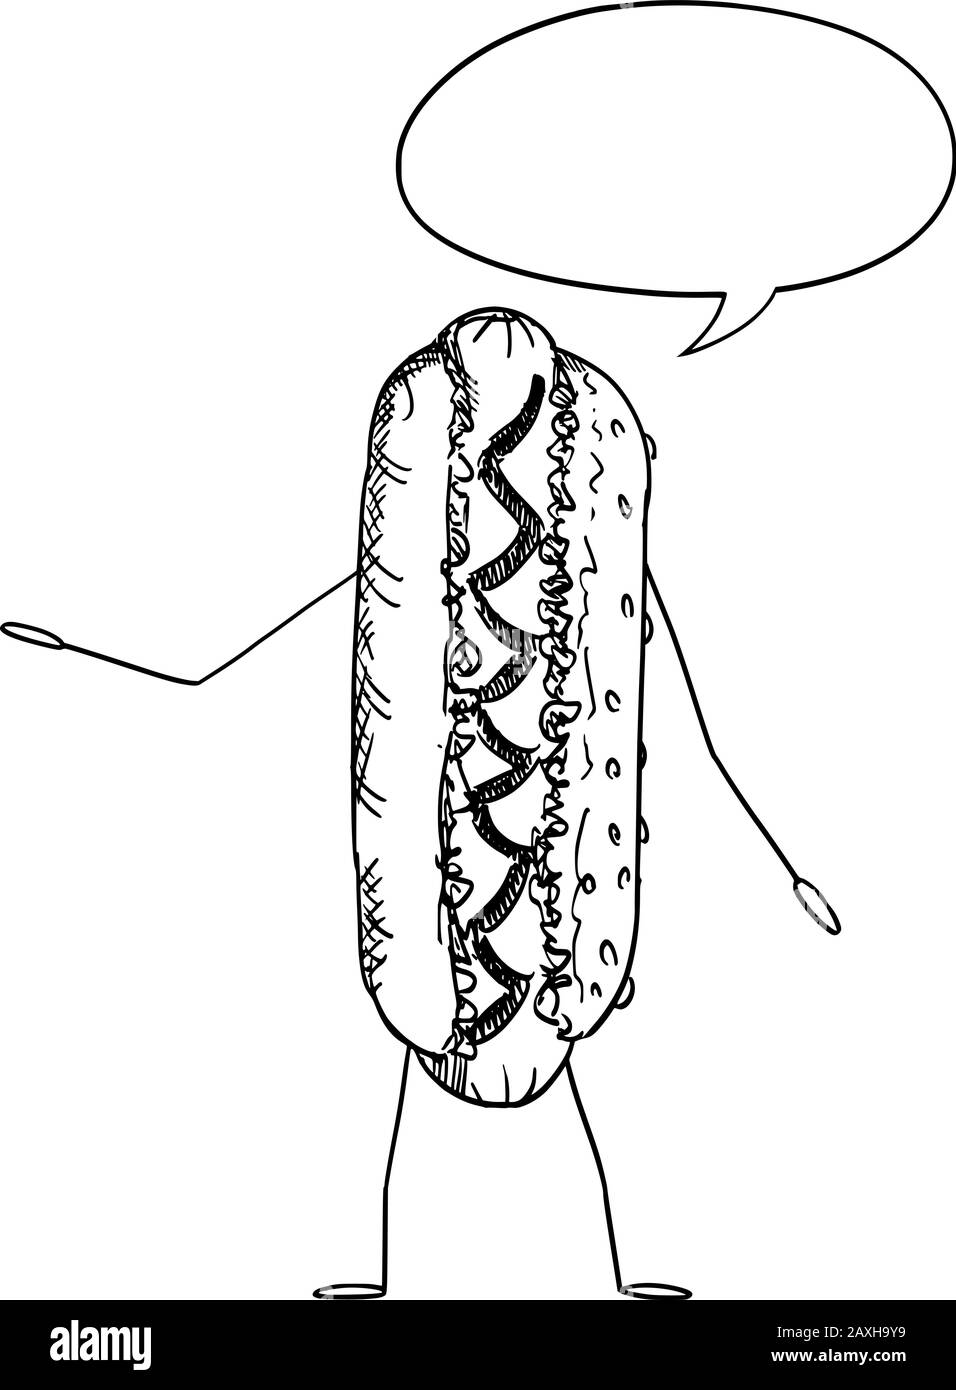 Vektorgrafiken von Cartoon Hot Dog oder Hotdog Food-Charakter mit Sprechblase. Gesunder Lebensstil und Werbung für Junk- oder Fast-Food-Werbung oder Marketingdesign. Stock Vektor